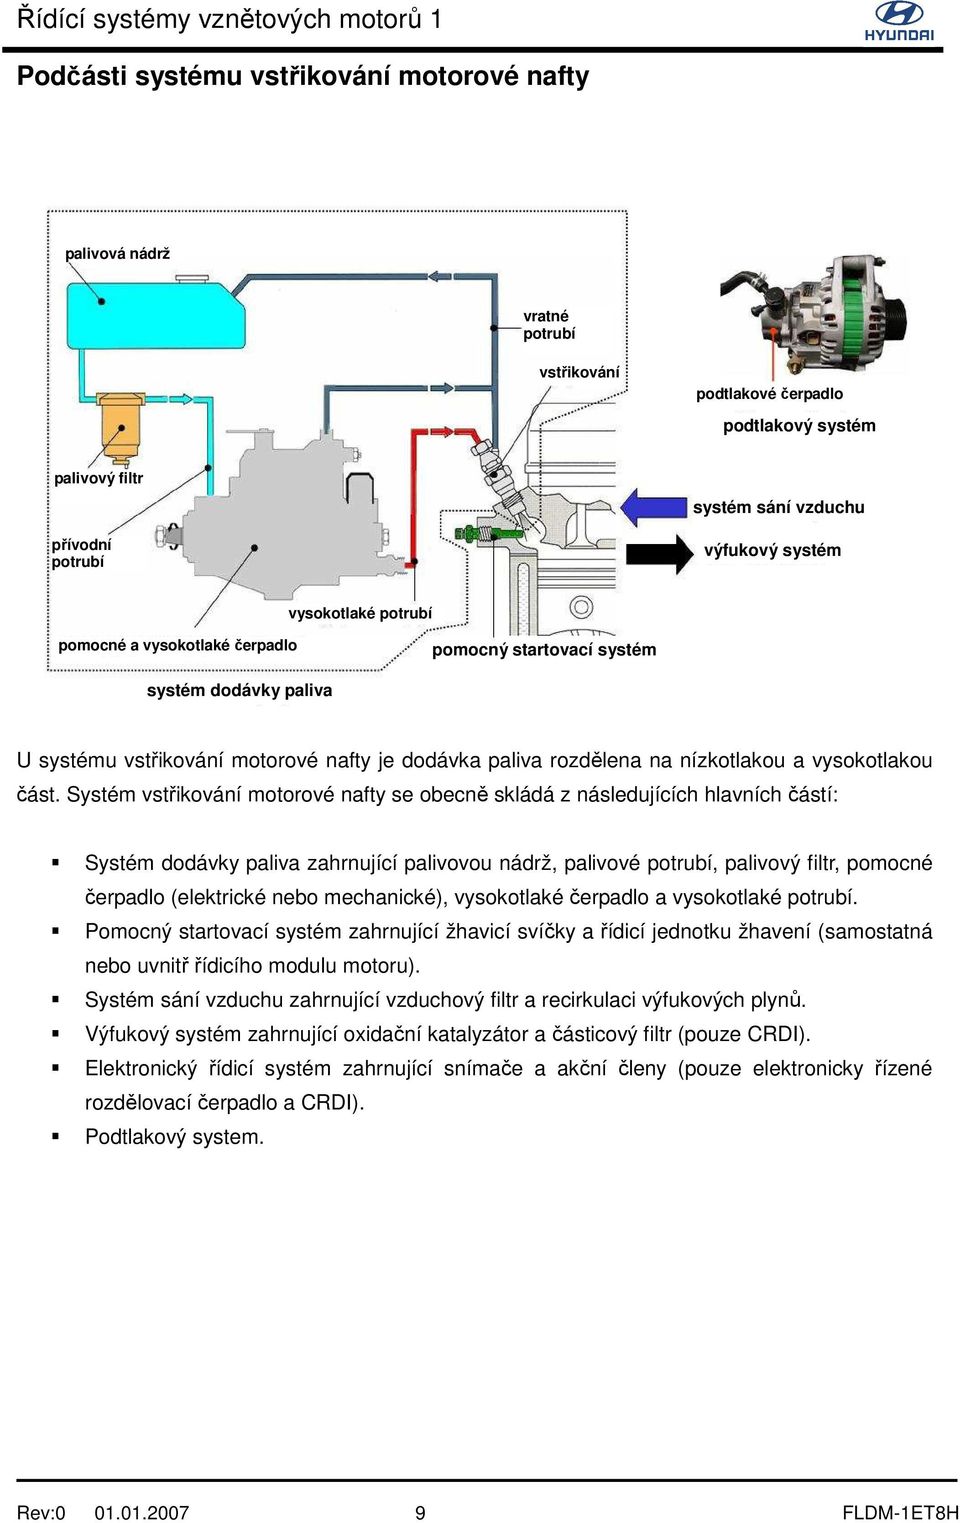 Systém vstřikování motorové nafty se obecně skládá z následujících hlavních částí: Systém dodávky paliva zahrnující palivovou nádrž, palivové potrubí, palivový filtr, pomocné čerpadlo (elektrické